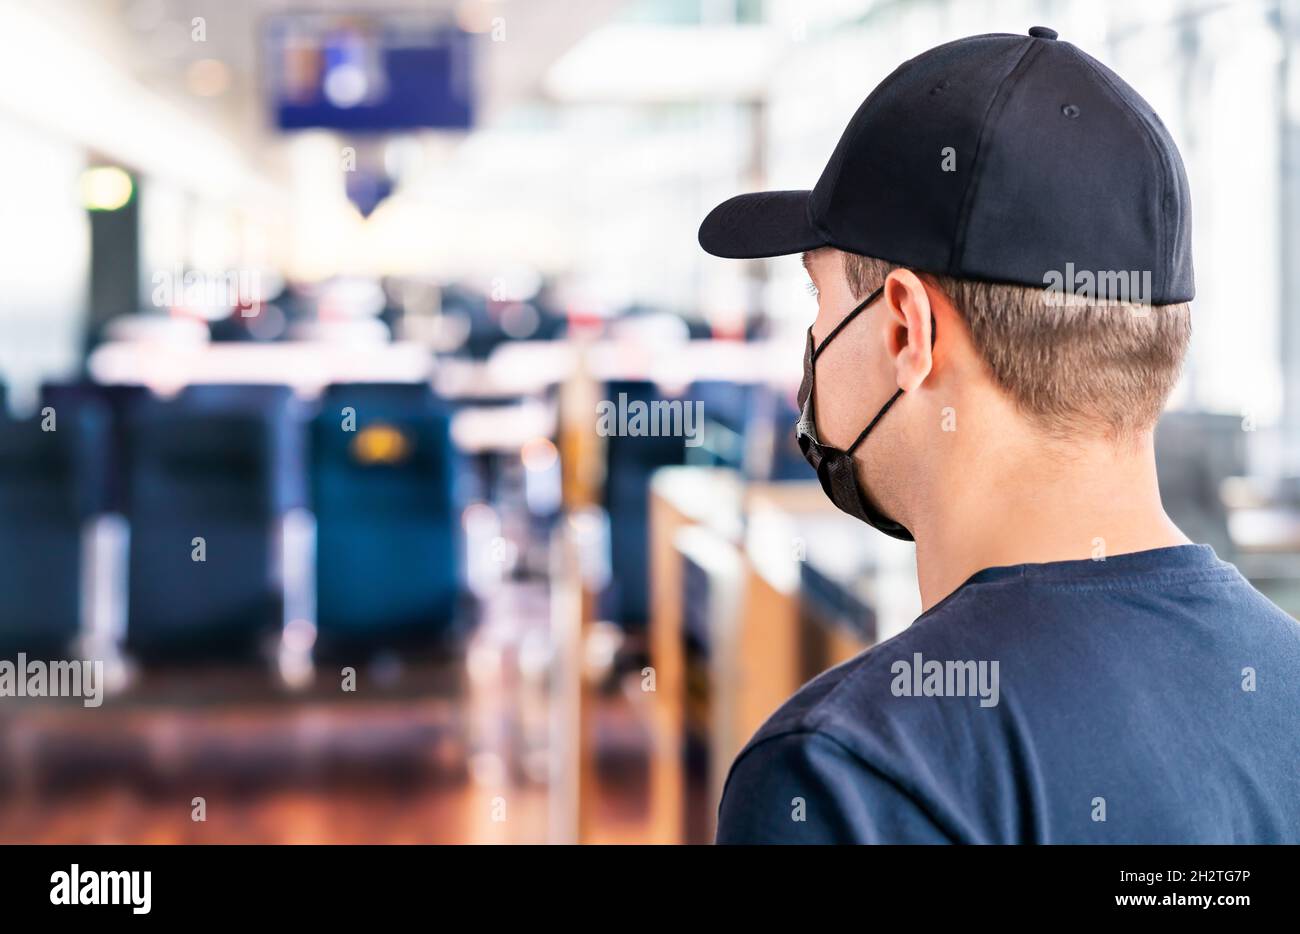 Maske am Flughafen. Mann, der im Terminal auf den Flug wartet. Corona-Virus, covid19 und Reise. Tourist trägt Gesichtsmask während einer Pandemie am Gate. Stockfoto